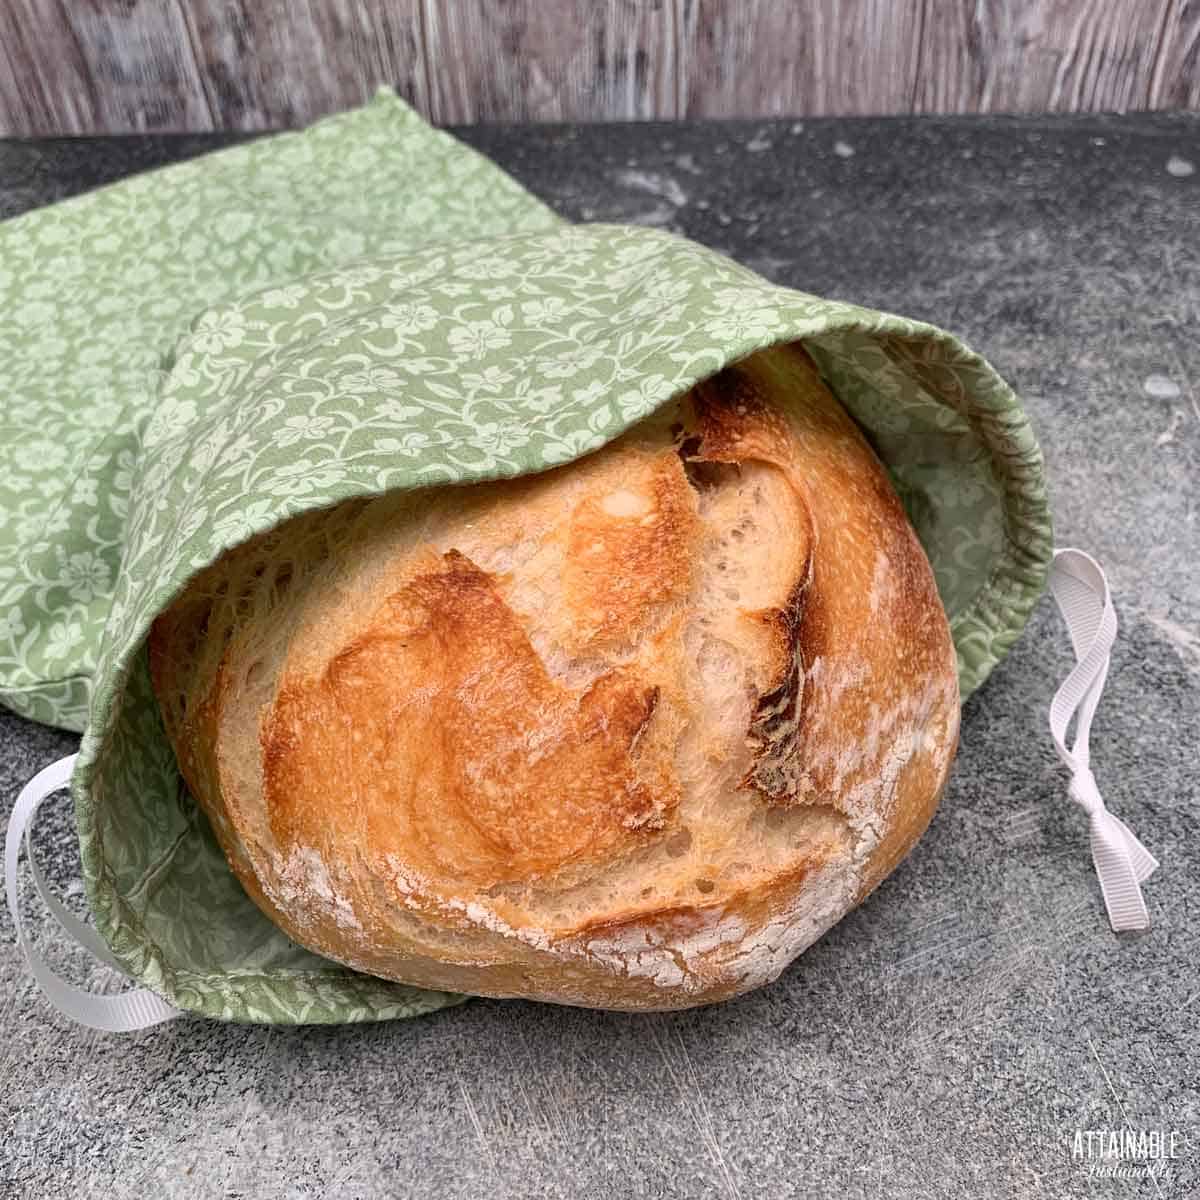 fresh loaf of bread in a drawstring cloth bag.